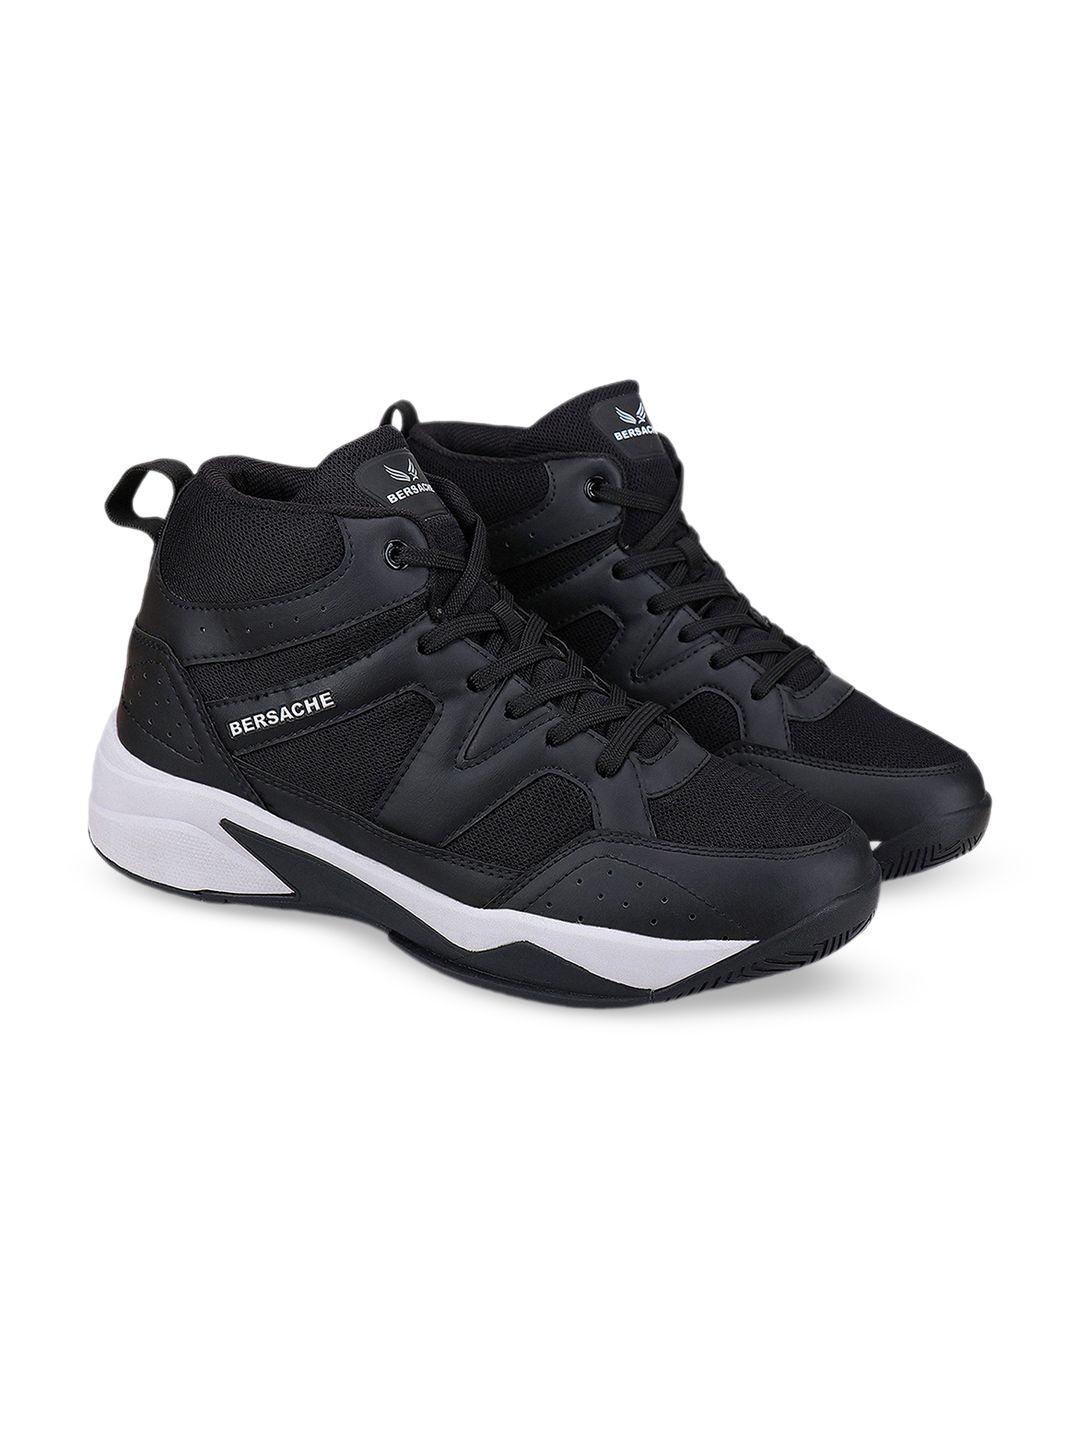 bersache-men-lightweight-comfort-insole-canvas-contrast-sole-sneakers